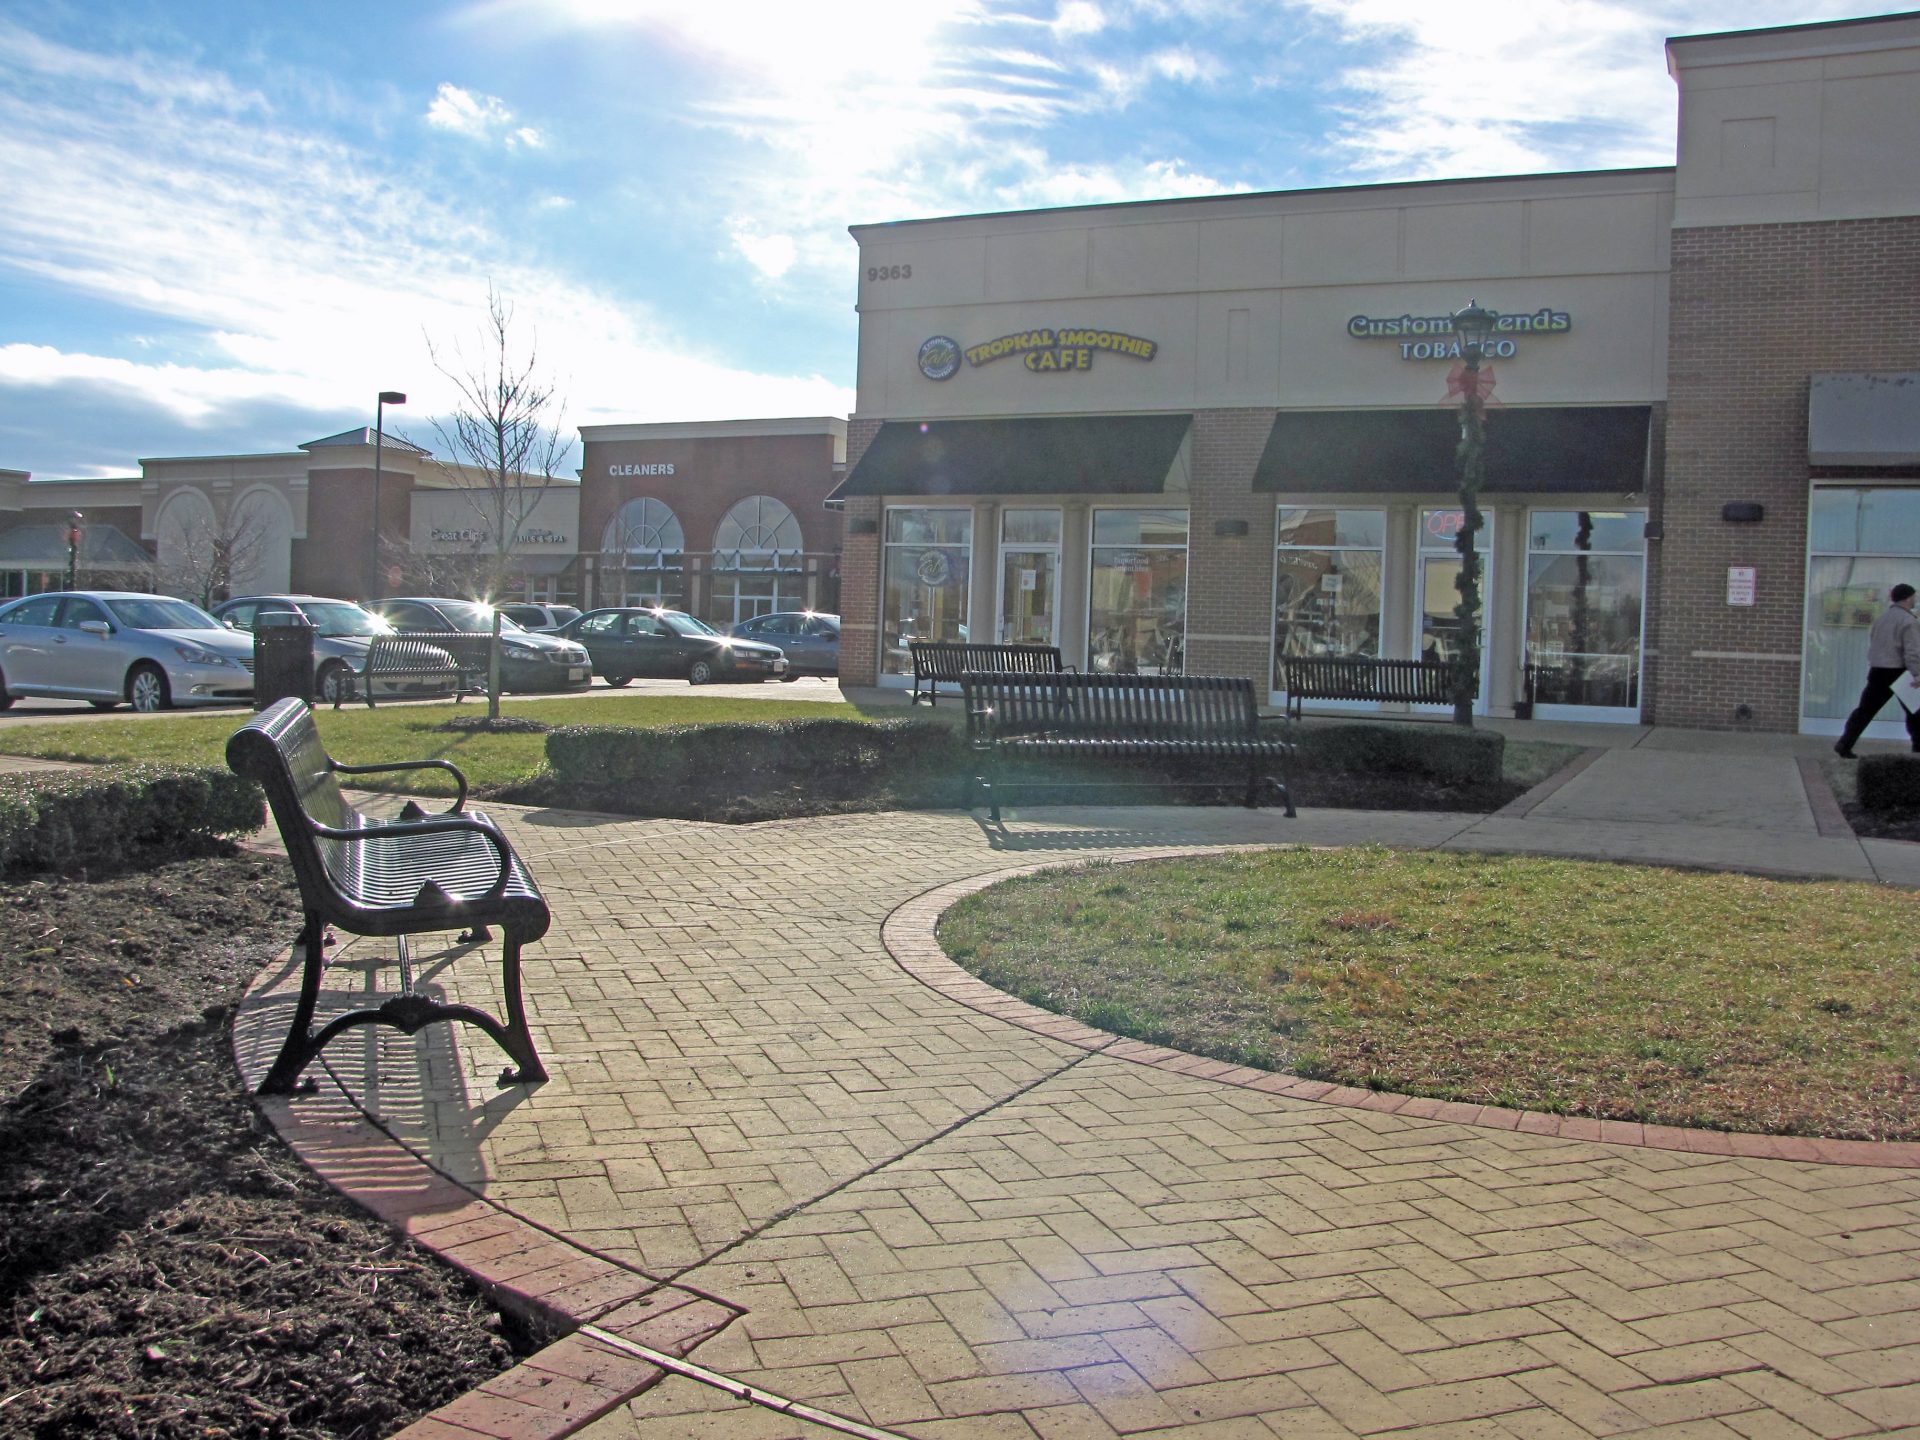 Rutland in Hanover County, VA - Retail Commons